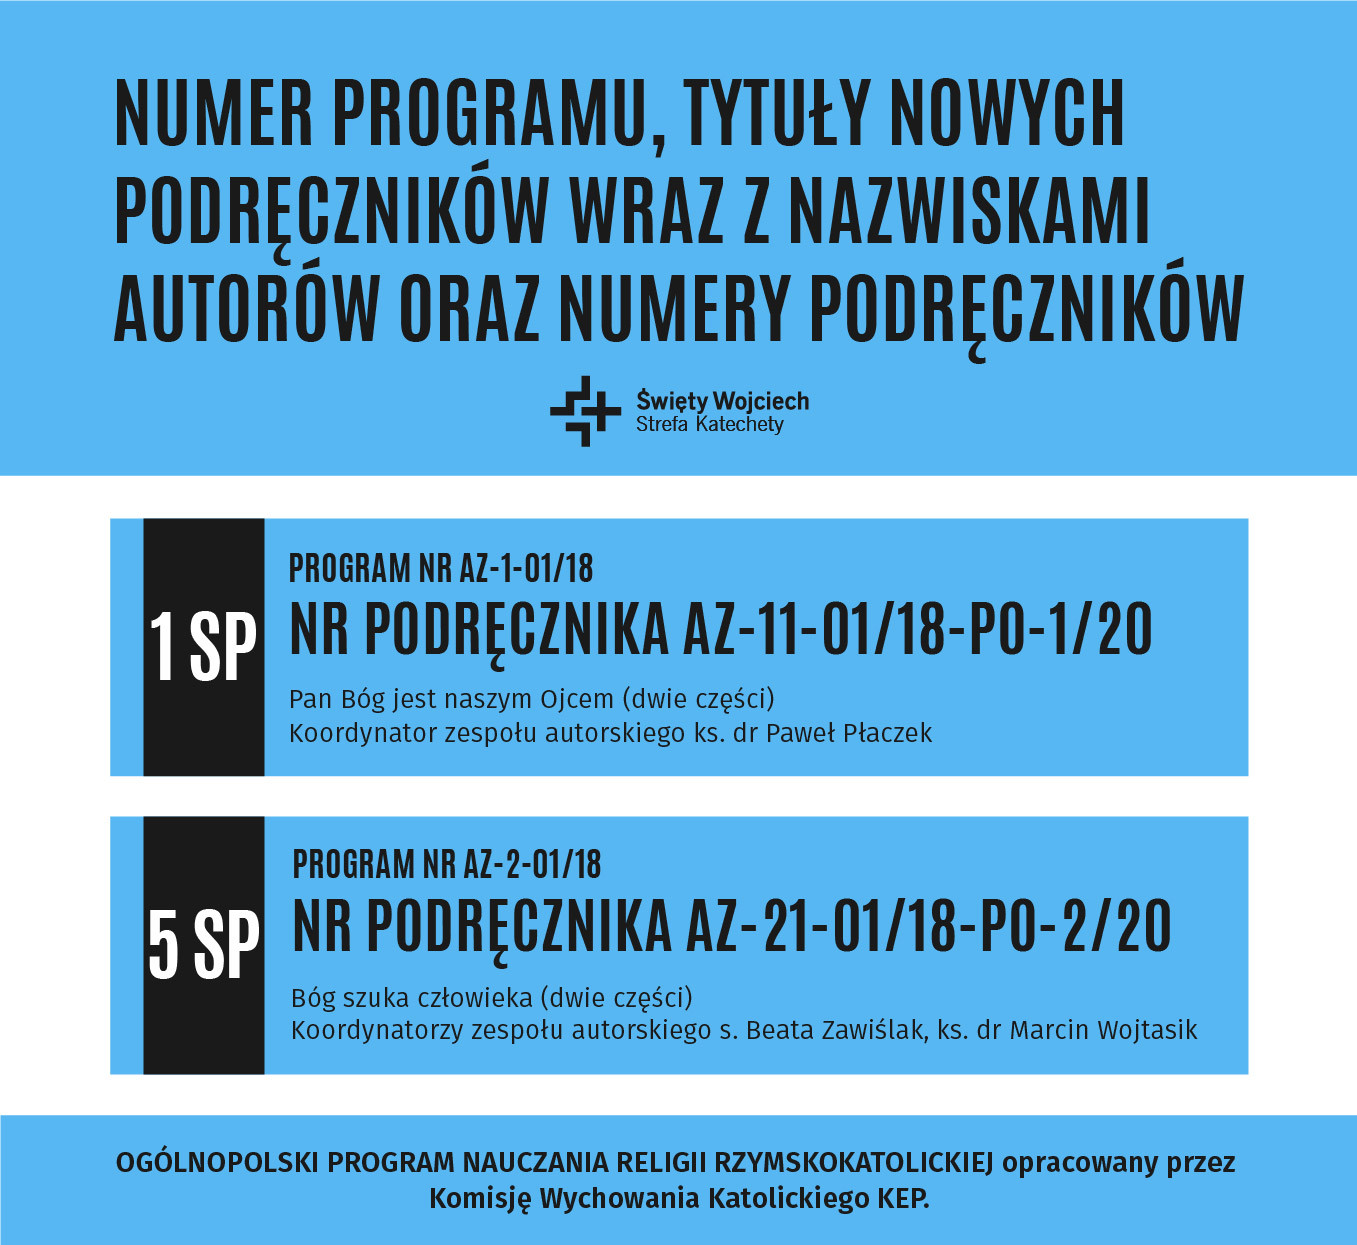 Numery programu, tytuły nowych podręczników wraz z nazwiskami autorów oraz numery podręczników